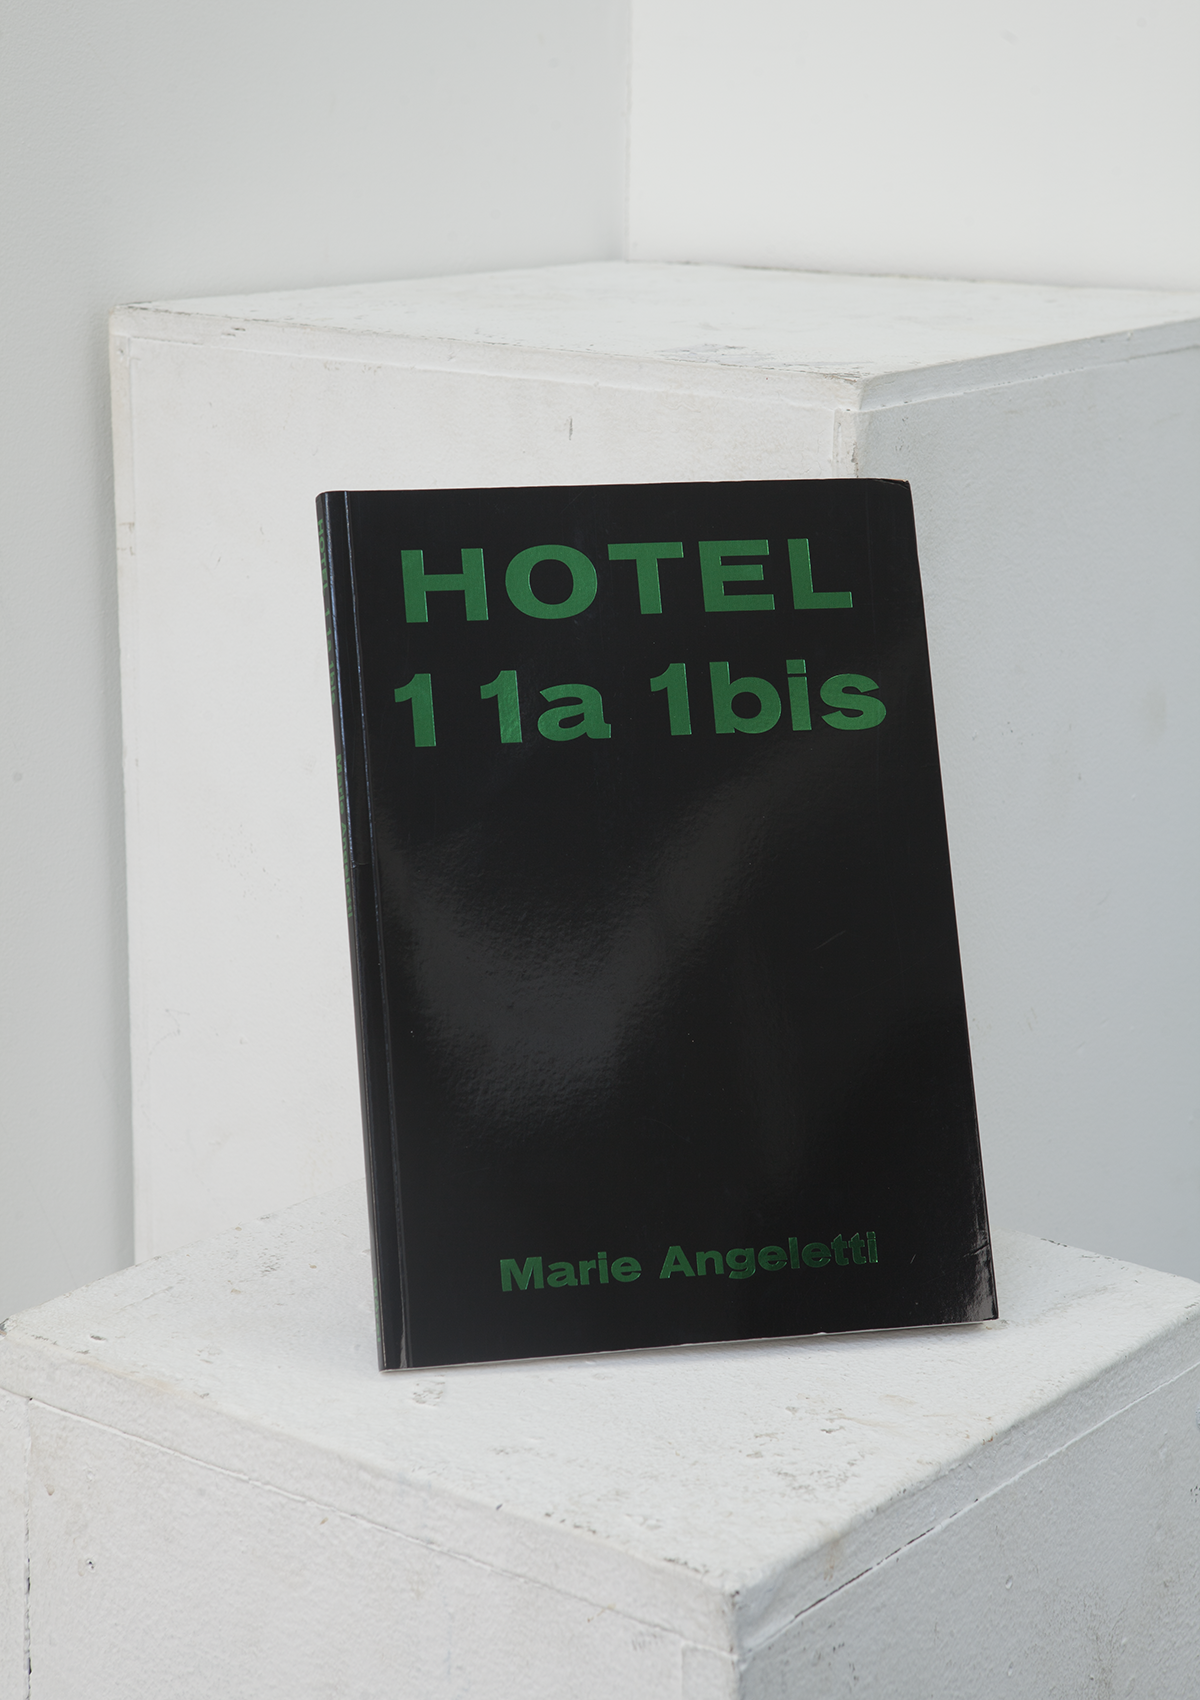 Hotel 1 1a 1bis